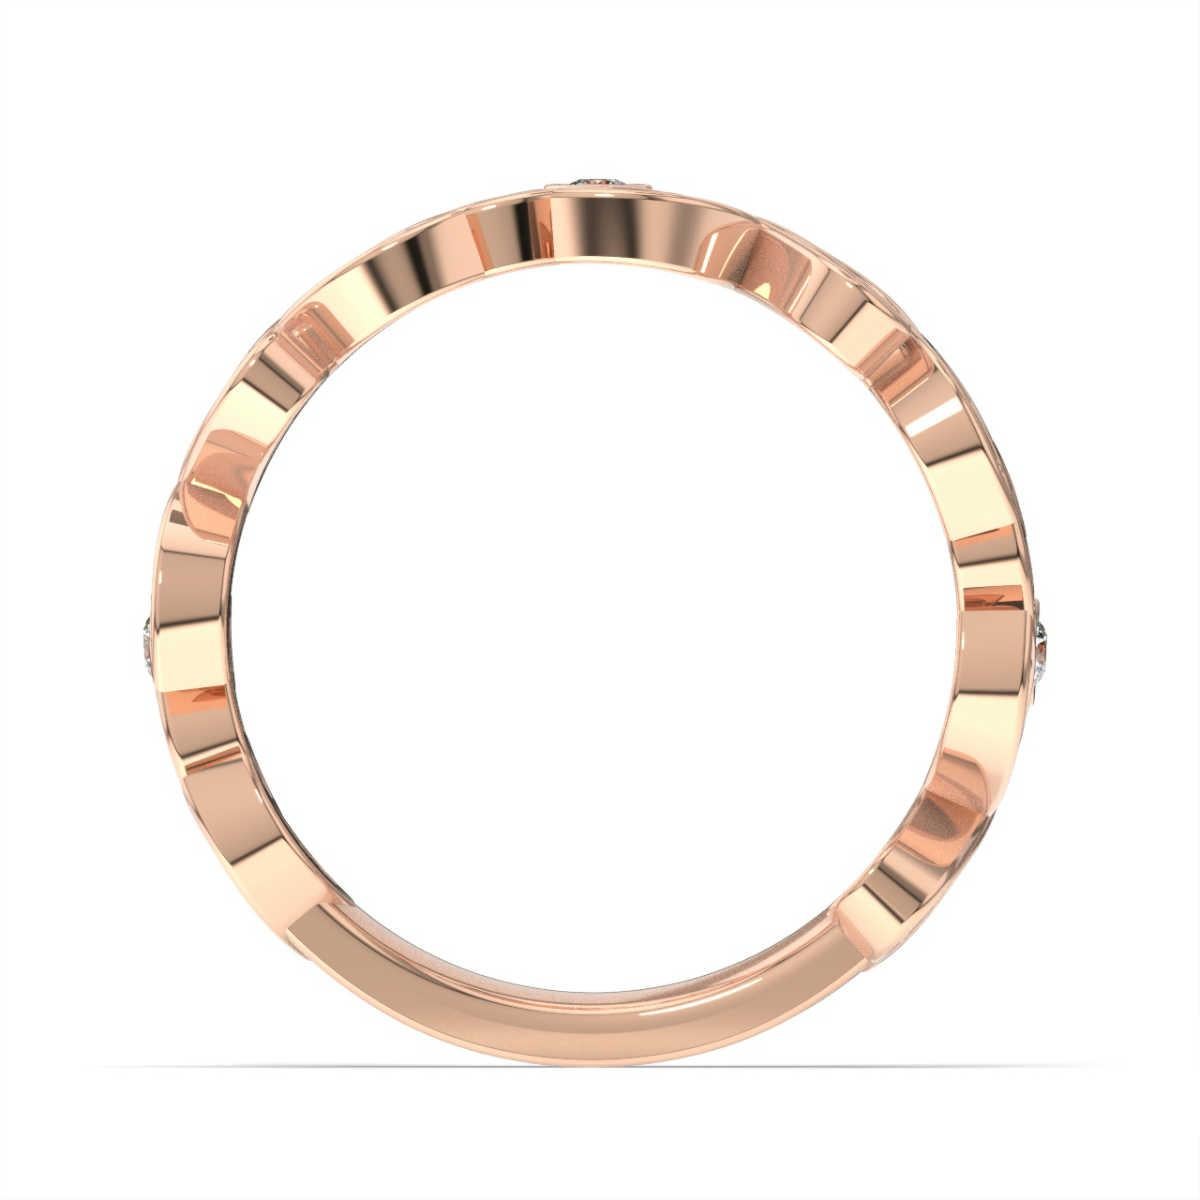 Bei diesem Ring sind runde Brillanten mit Bändern aus marquiseförmigem Metall verwoben, die einen zarten Hauch von Milgarin aufweisen. Erleben Sie den Unterschied!

Einzelheiten zum Produkt: 

Farbe des zentralen Edelsteins: WEISS
Seite Edelstein